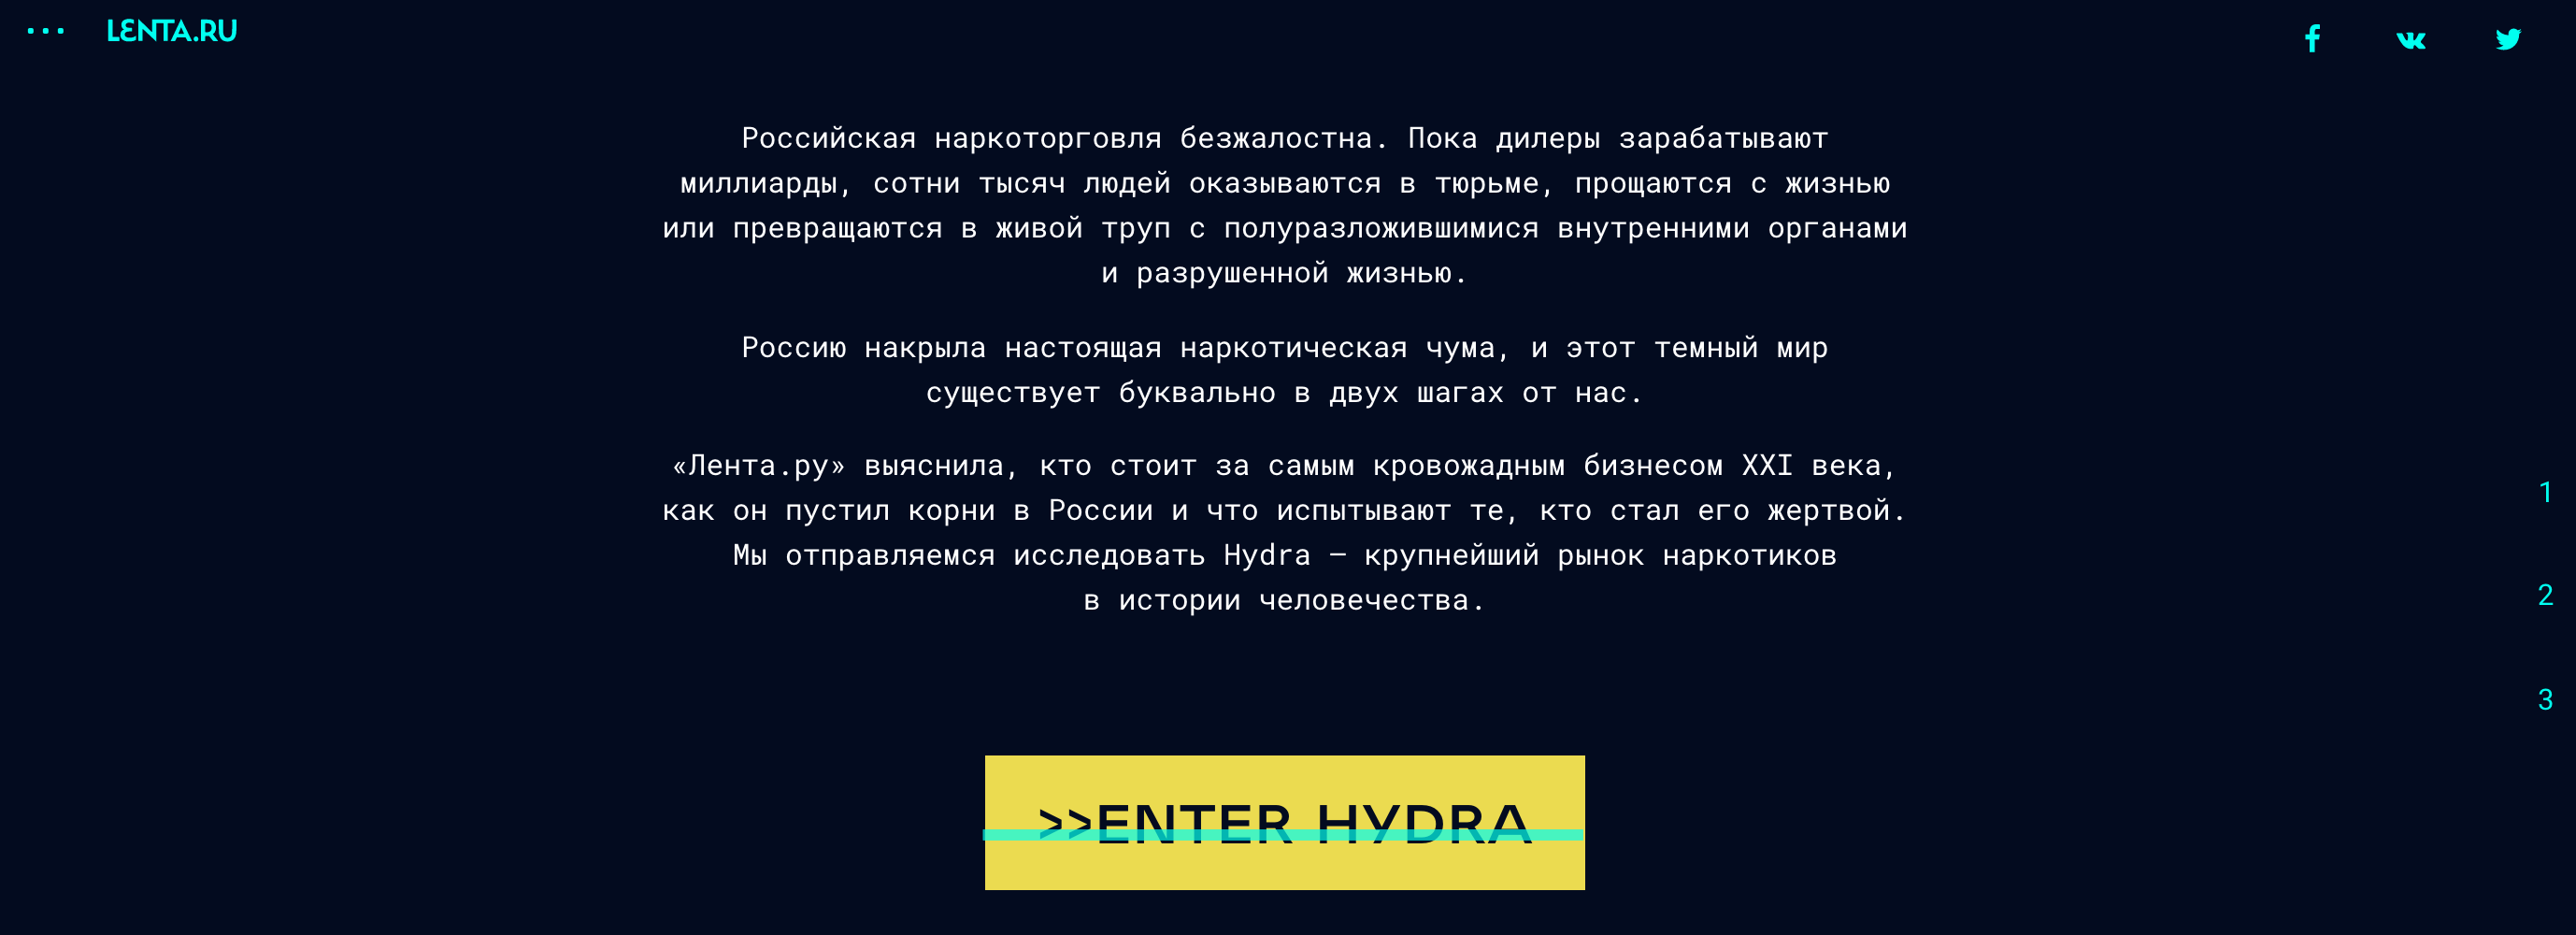 Http darknet lenta ru гидра скачать браузер тор настройка гирда